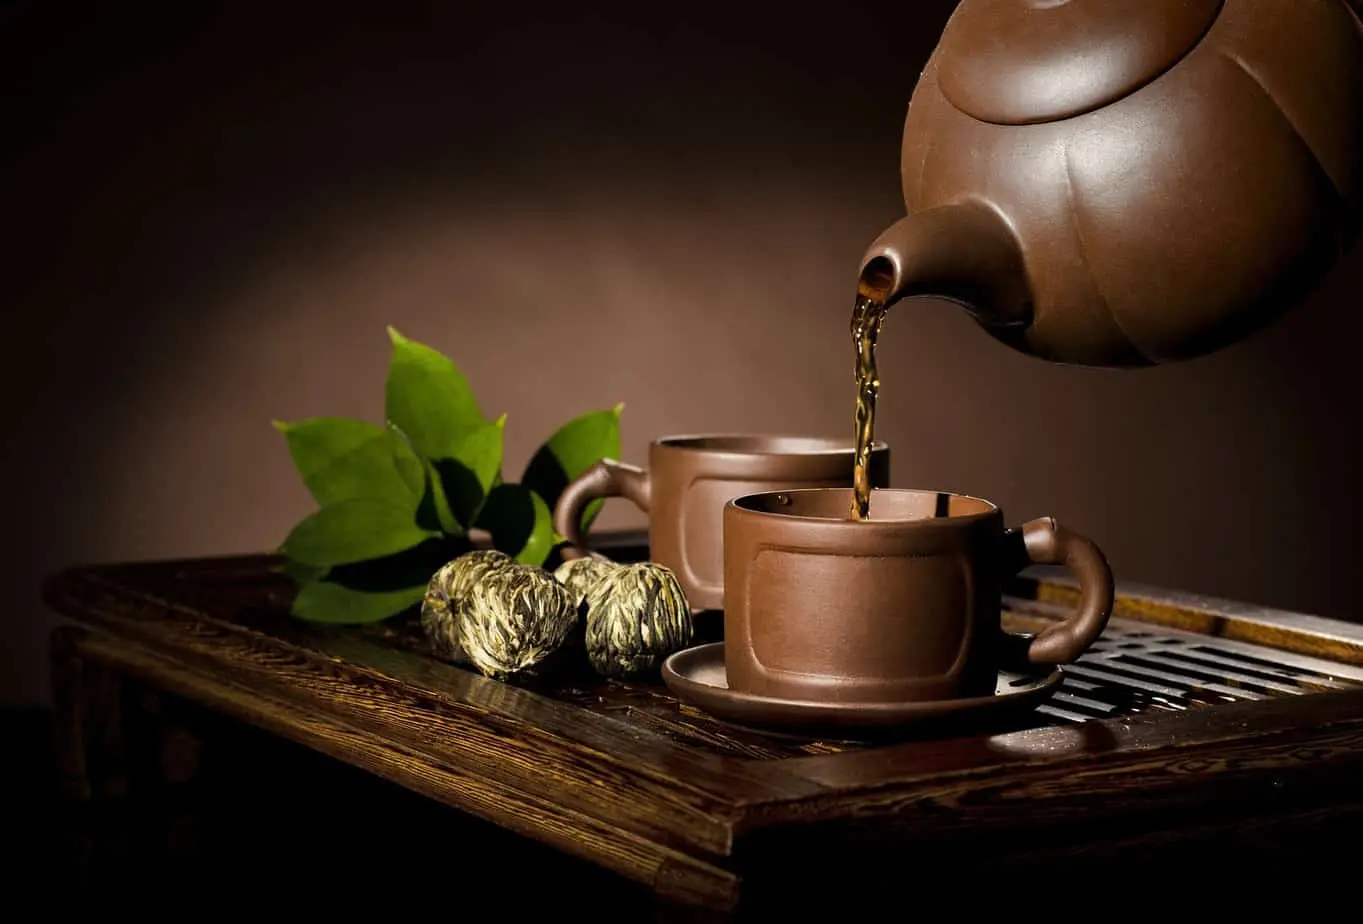 يُسكب فنجان شاي الترنجان على منضدة ، مما يدل على فوائد هذا الشاي التقليدي.